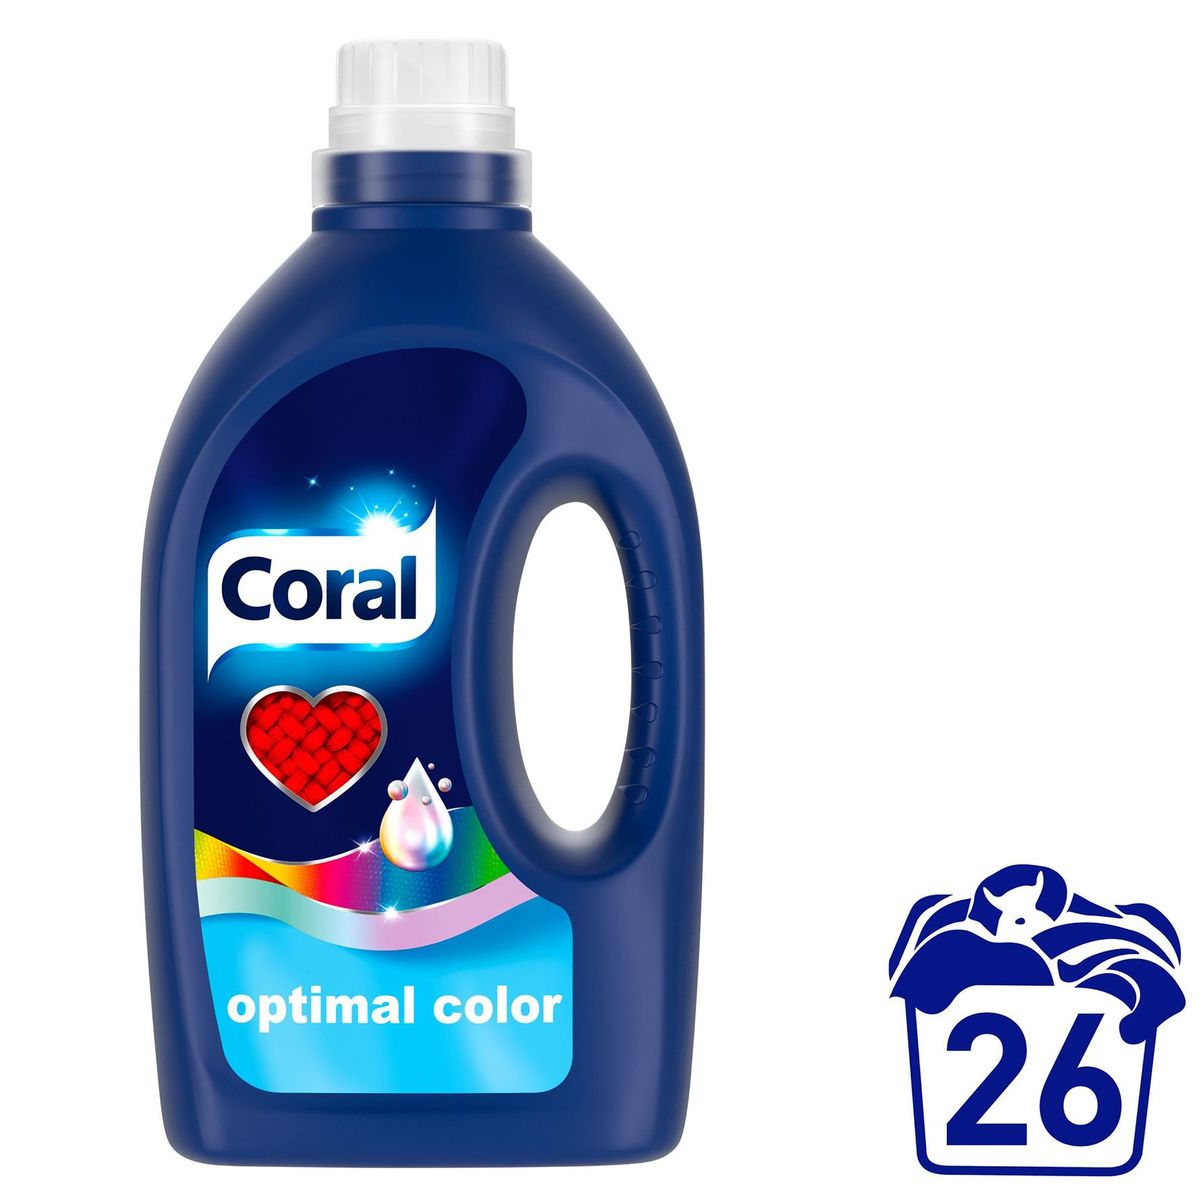 Coral Détergent liquide Optimal Color 26 Lavages